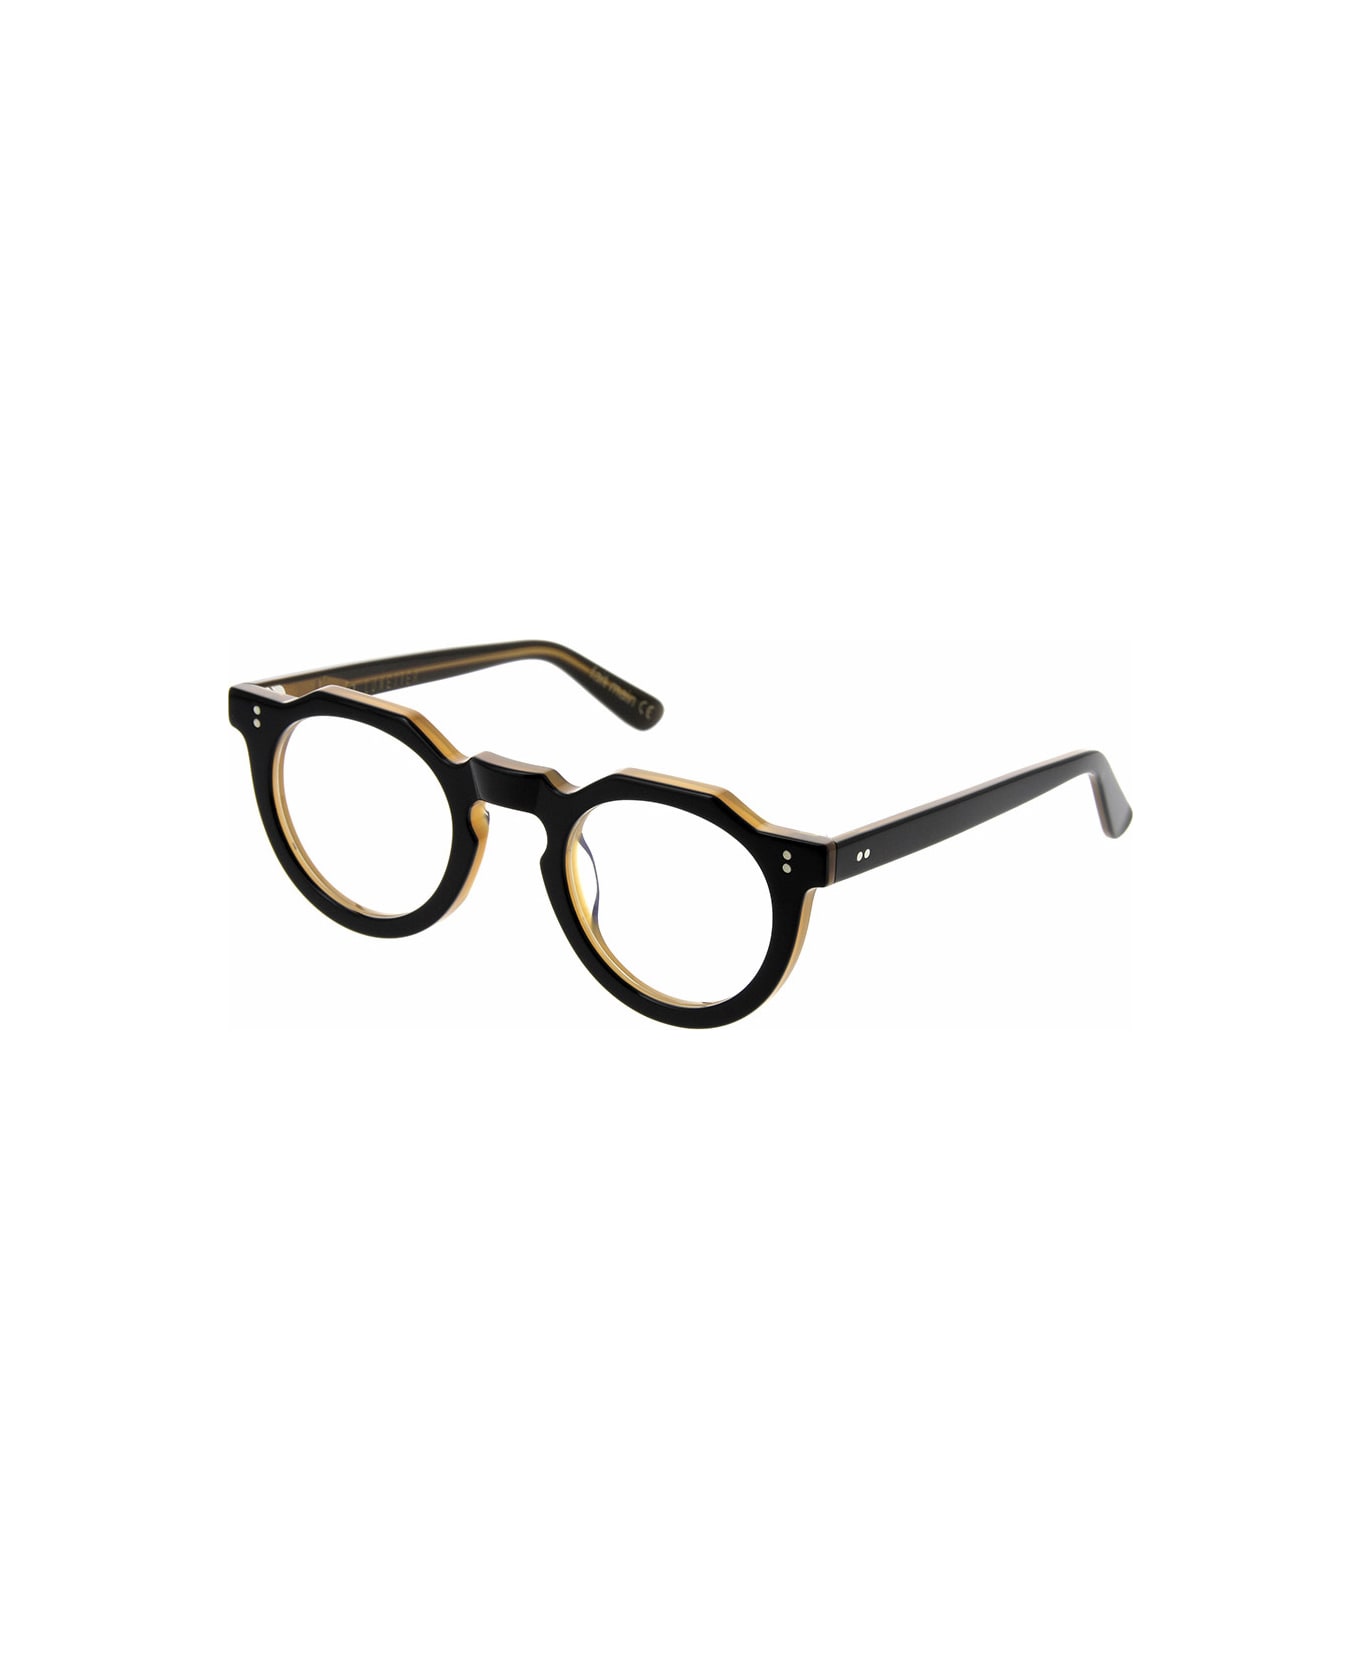 Lesca Picas XL LTD5 Glasses - Nero e miele アイウェア